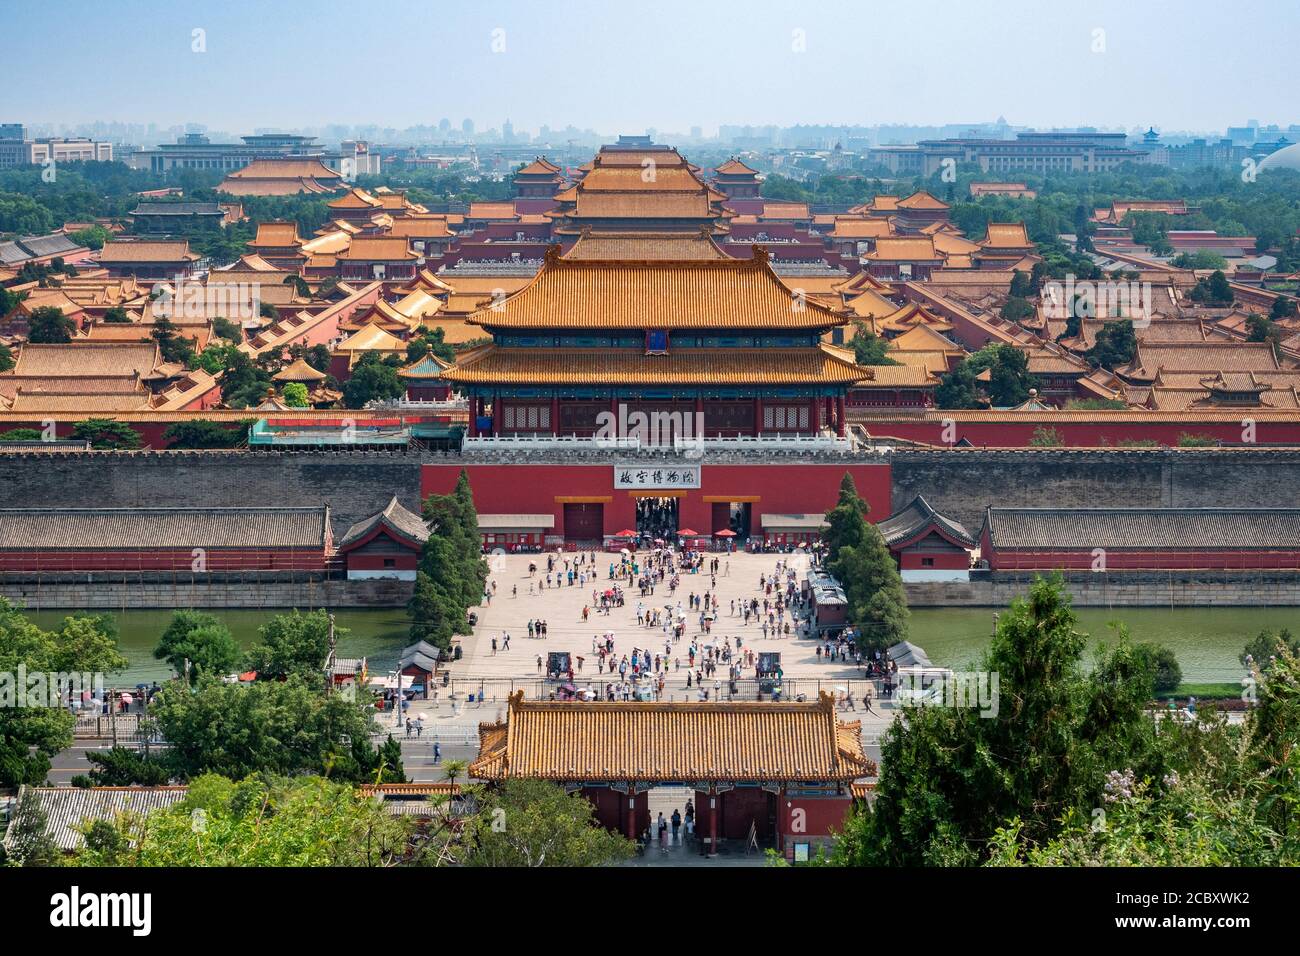 Pekín, China, gente a las puertas del antiguo palacio de la Ciudad Prohibida durante el verano. Traducción de caracteres chinos: El museo del palacio. Foto de stock